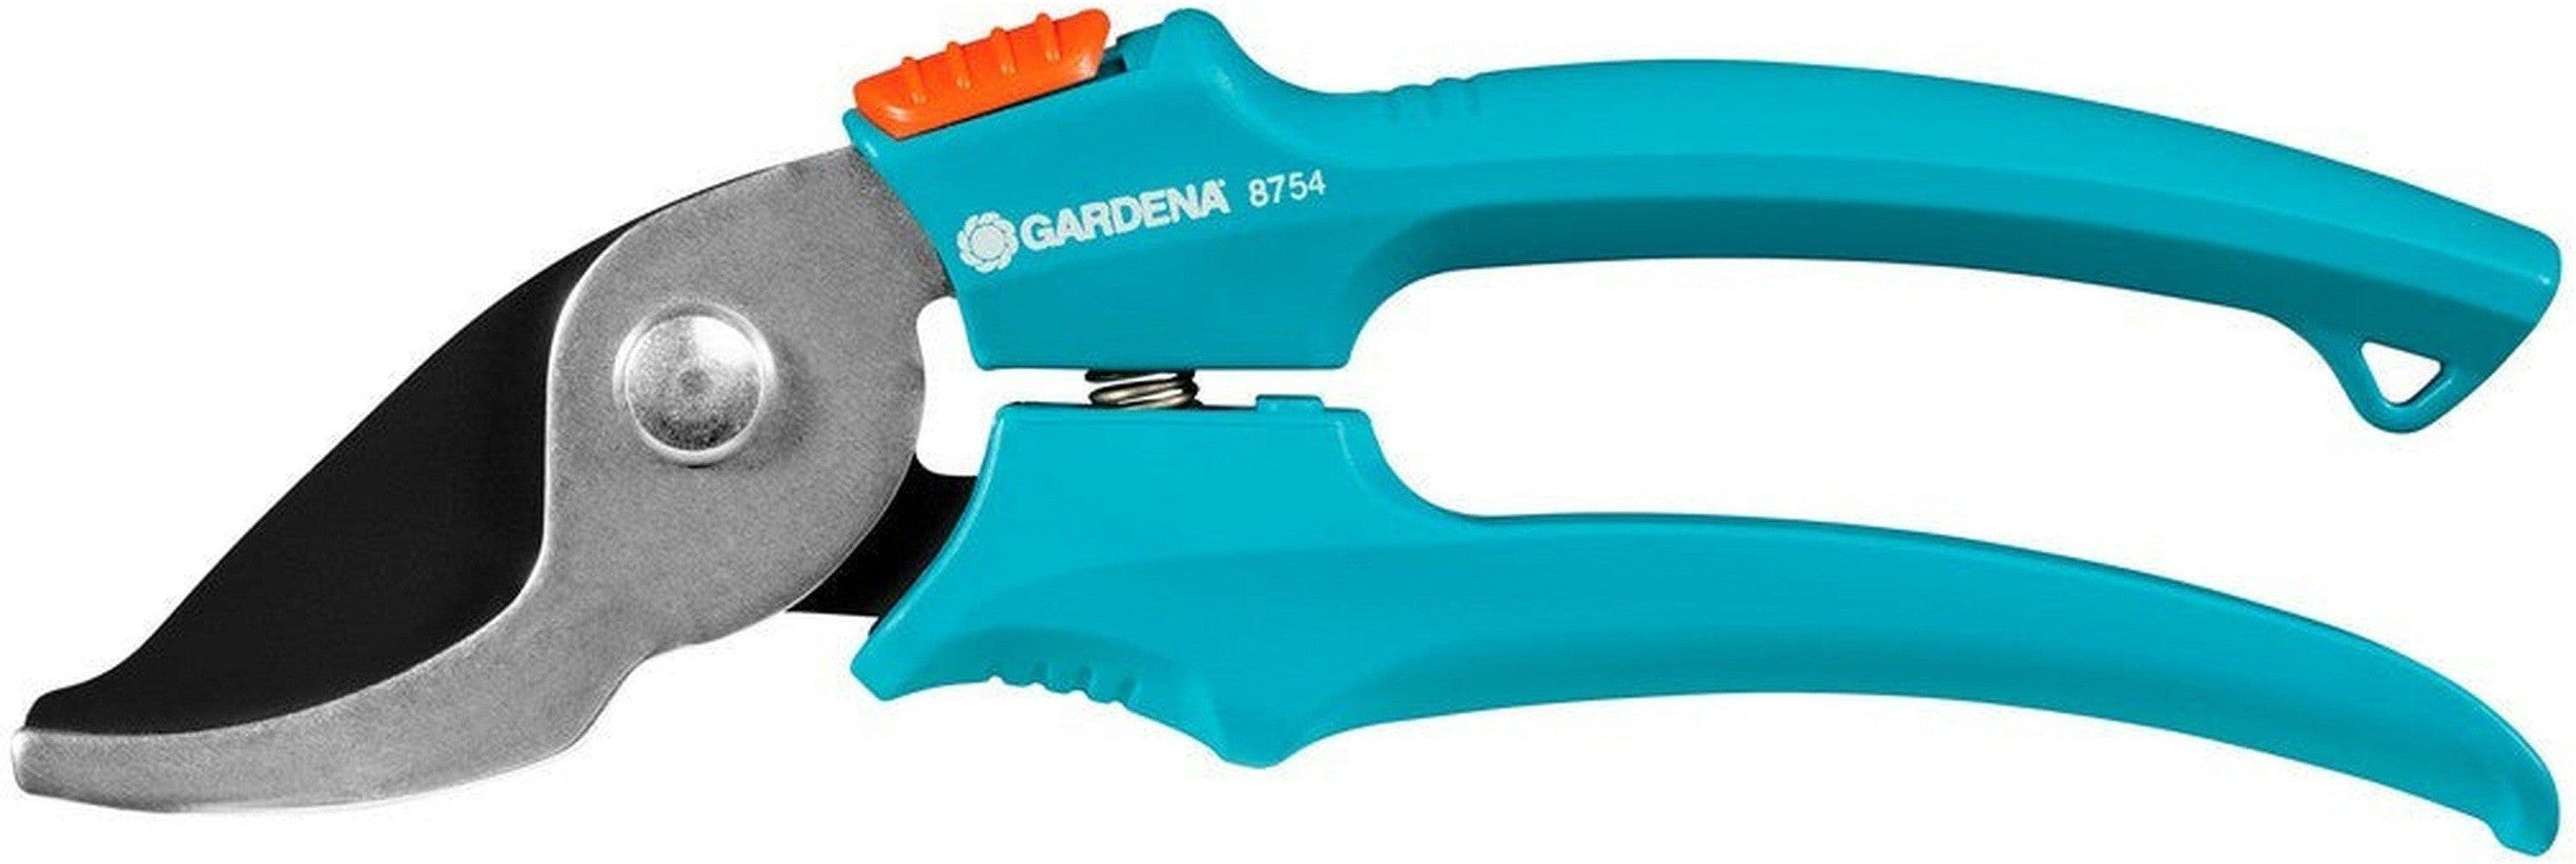 Pruning Shears Gardena 8754-30 18 mm